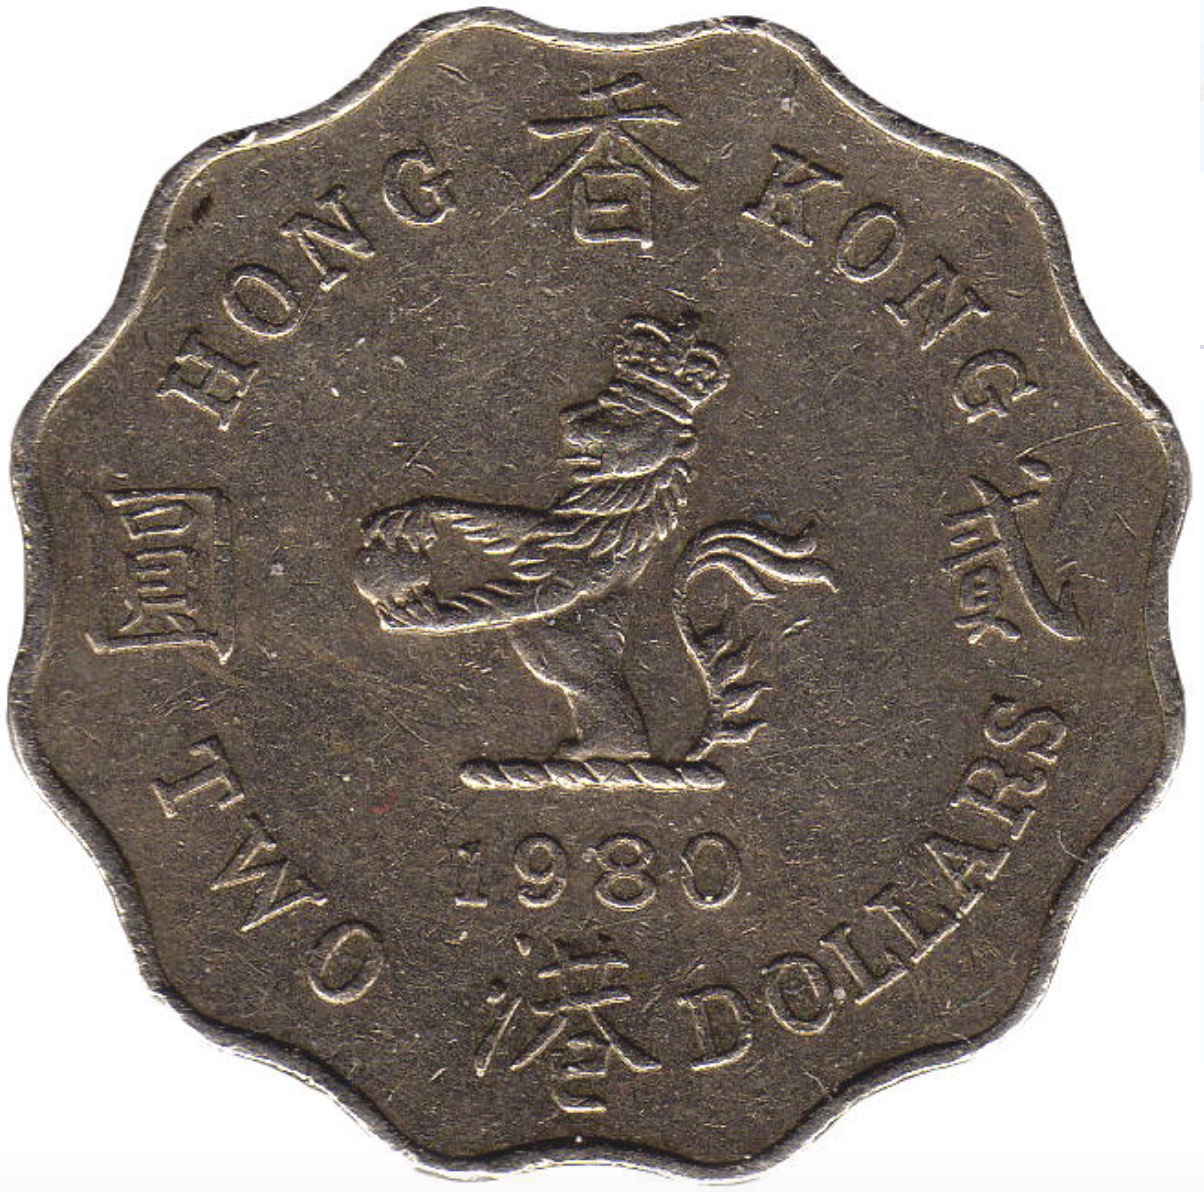 2 Hong Kong Dollars coin (Queen Elizabeth II)